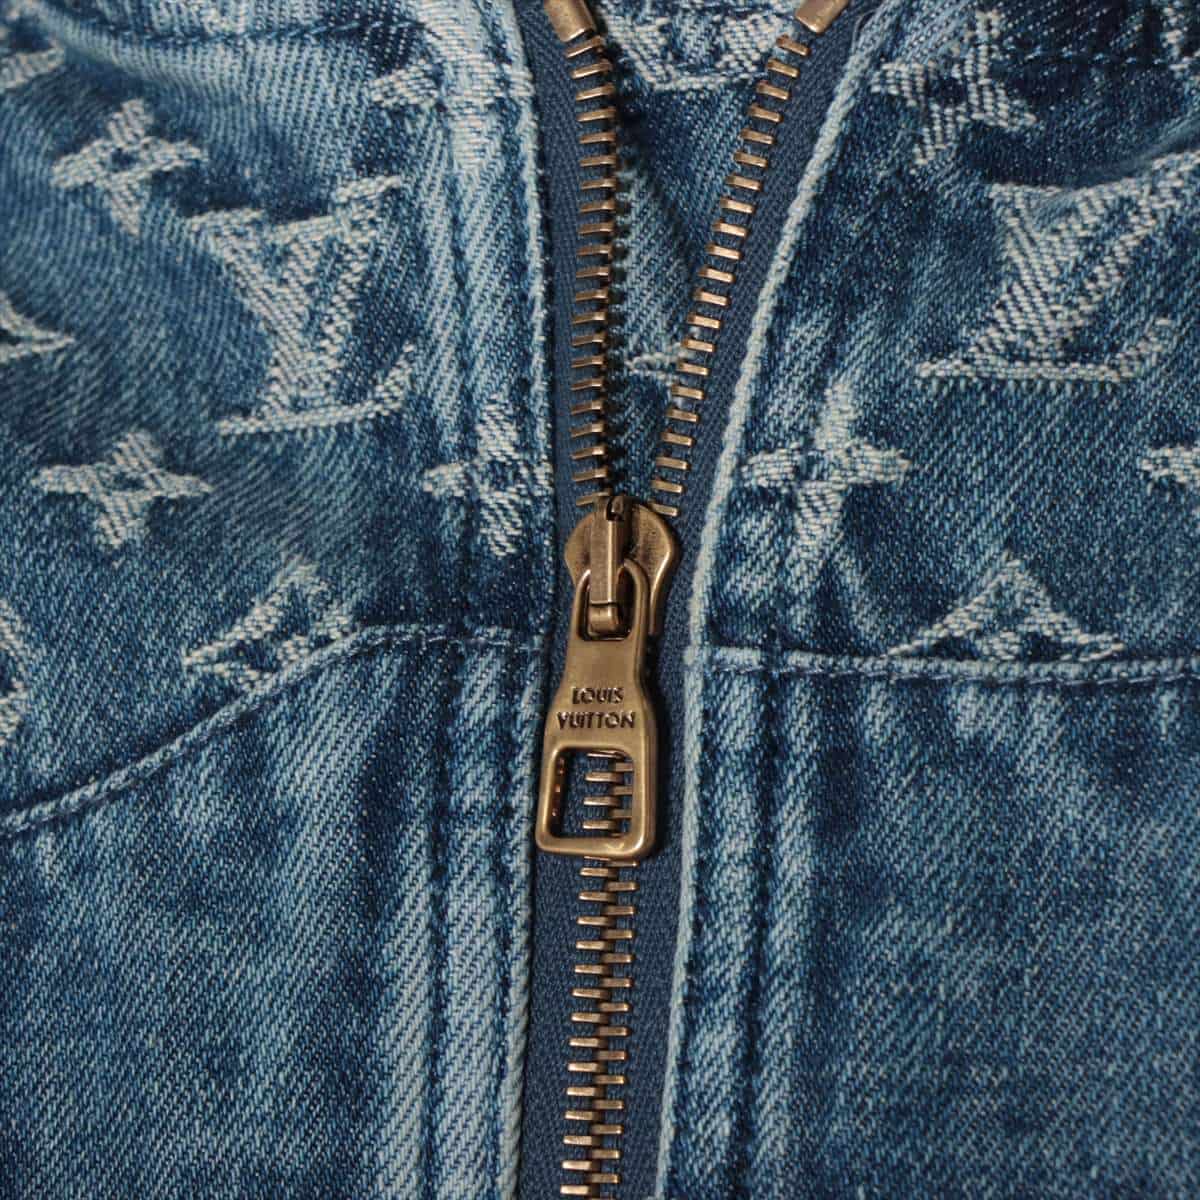 Louis Vuitton 22 years Cotton Denim jacket 46 Men's Blue  Monogram Patchwork Denim Hoodie